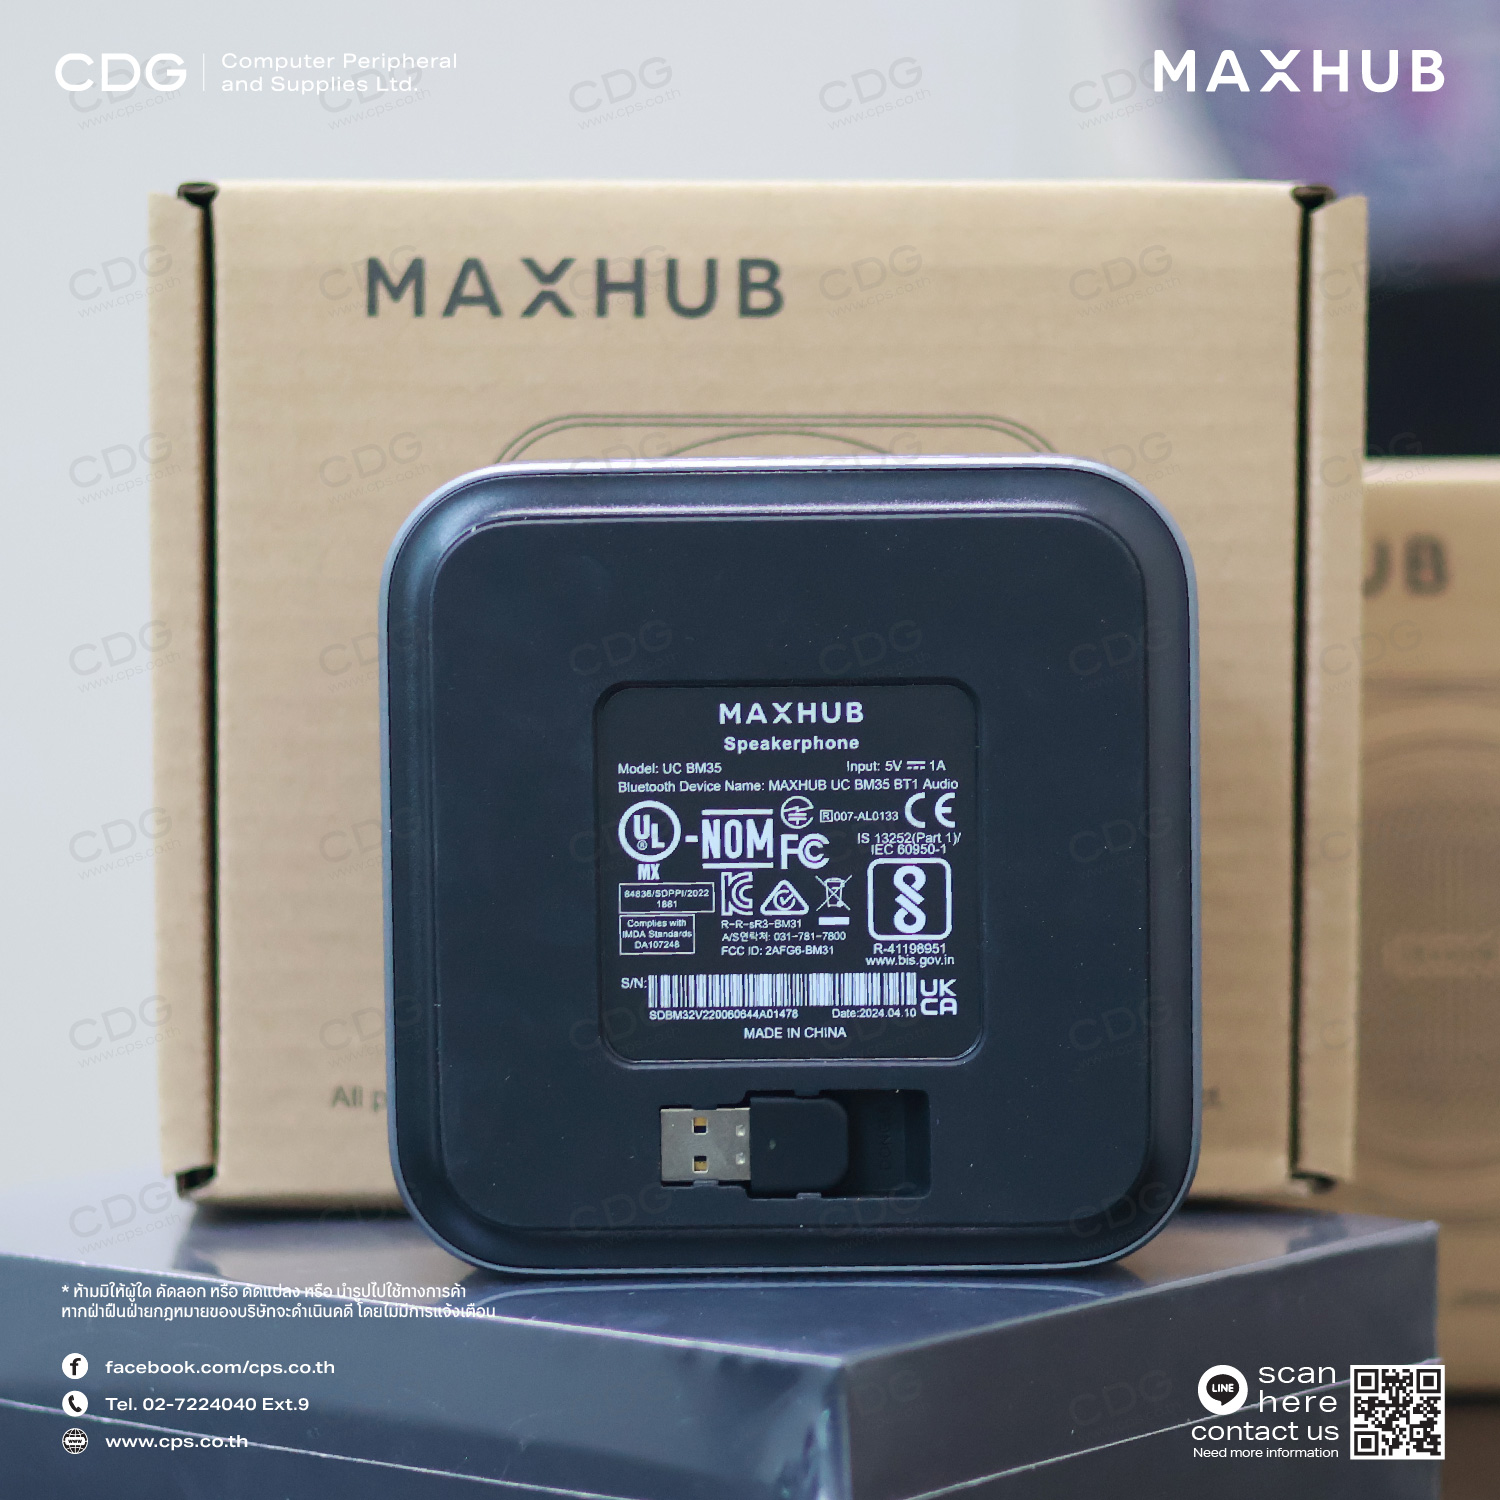 Maxhub Wireless Speakerphone MXH-BM35